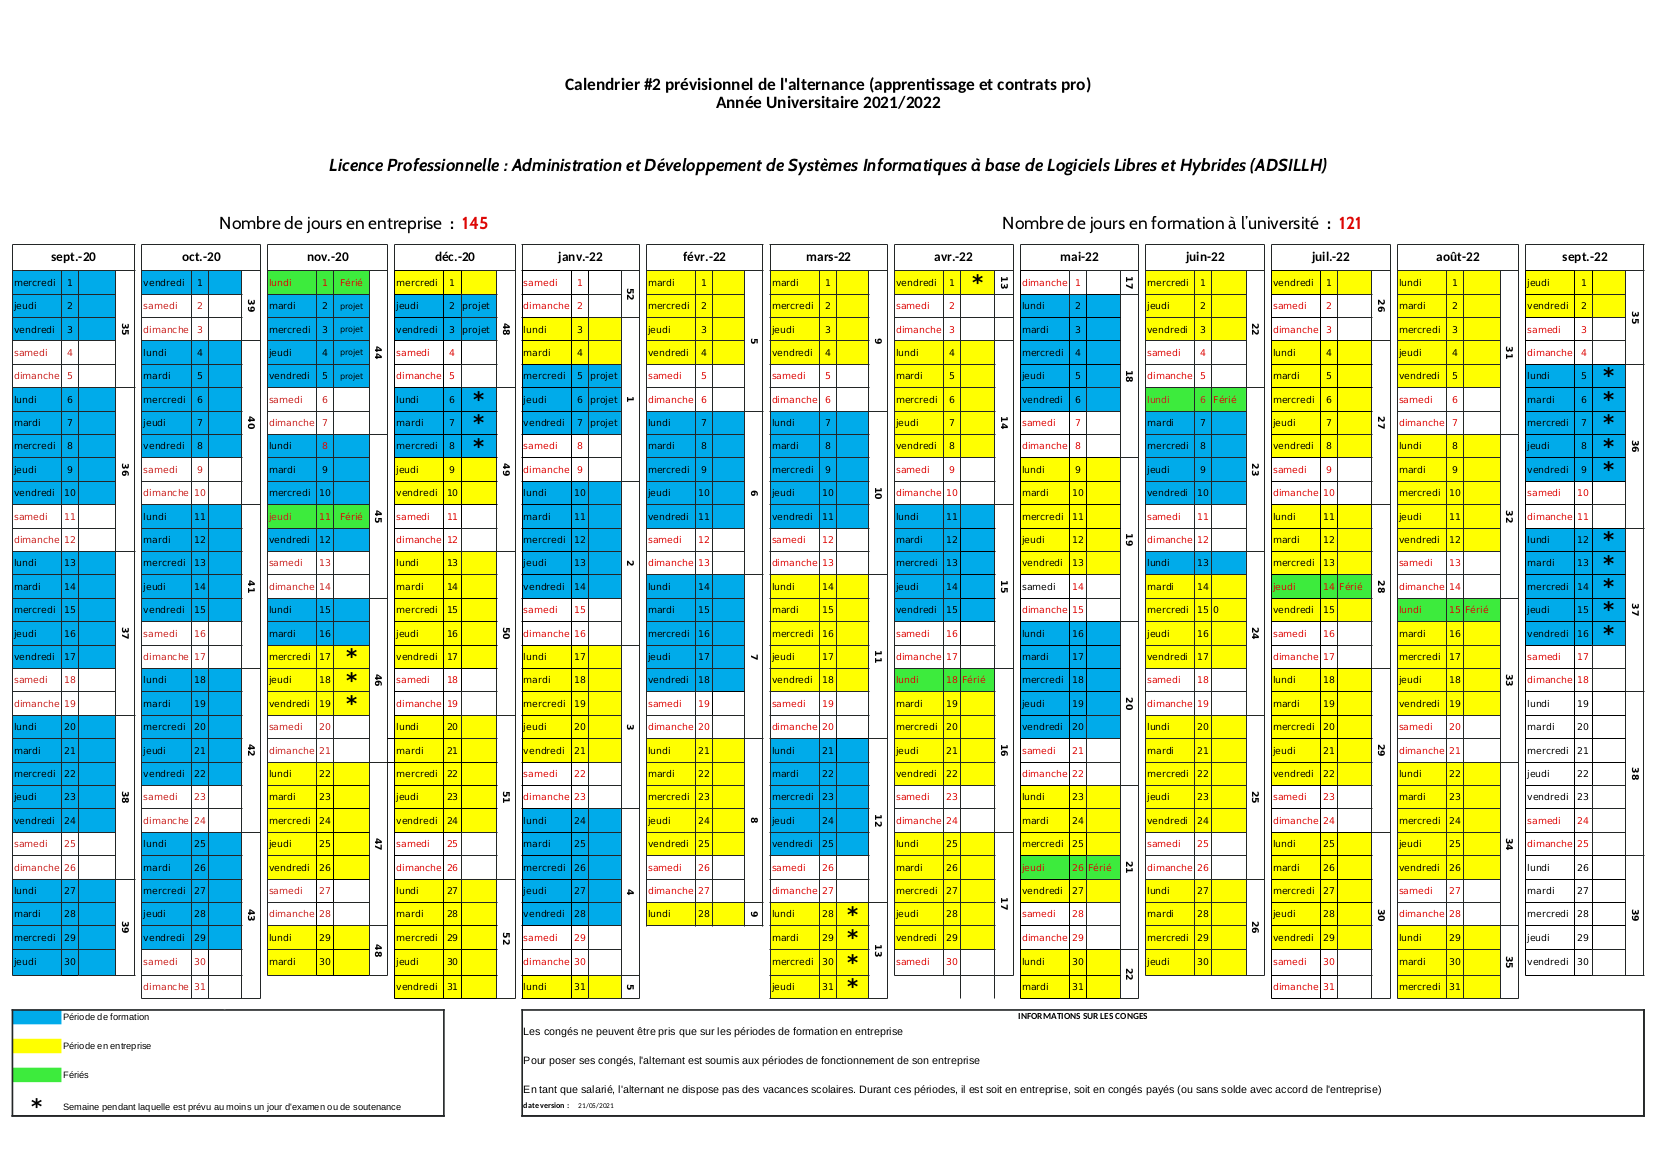 Calendrier prévisionnel (2021-2022) [alternance 2]